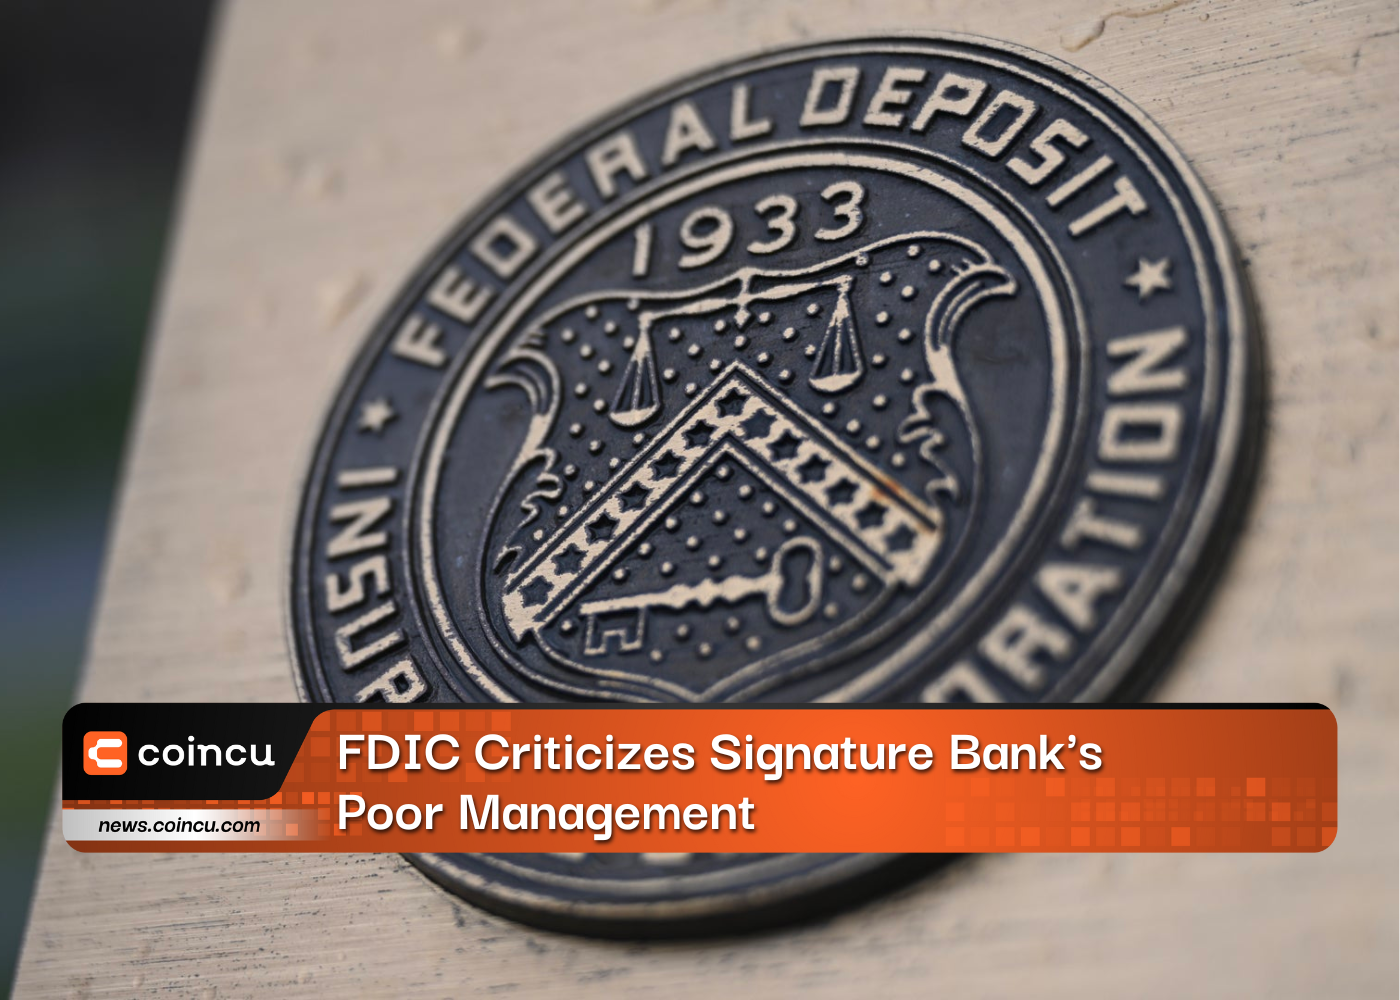 FDIC Criticizes Signature Bank's Poor Management